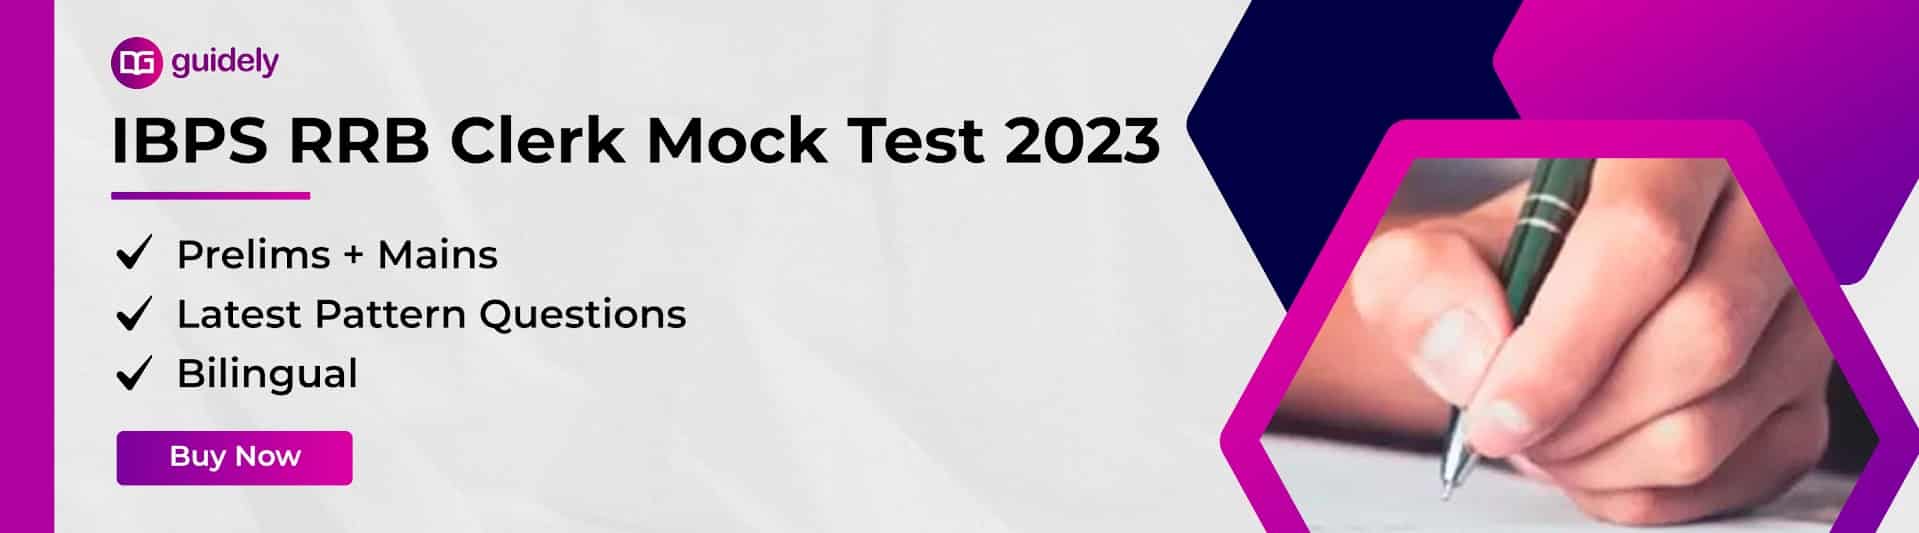 IBPS RRB Clerk Mock Test 2023